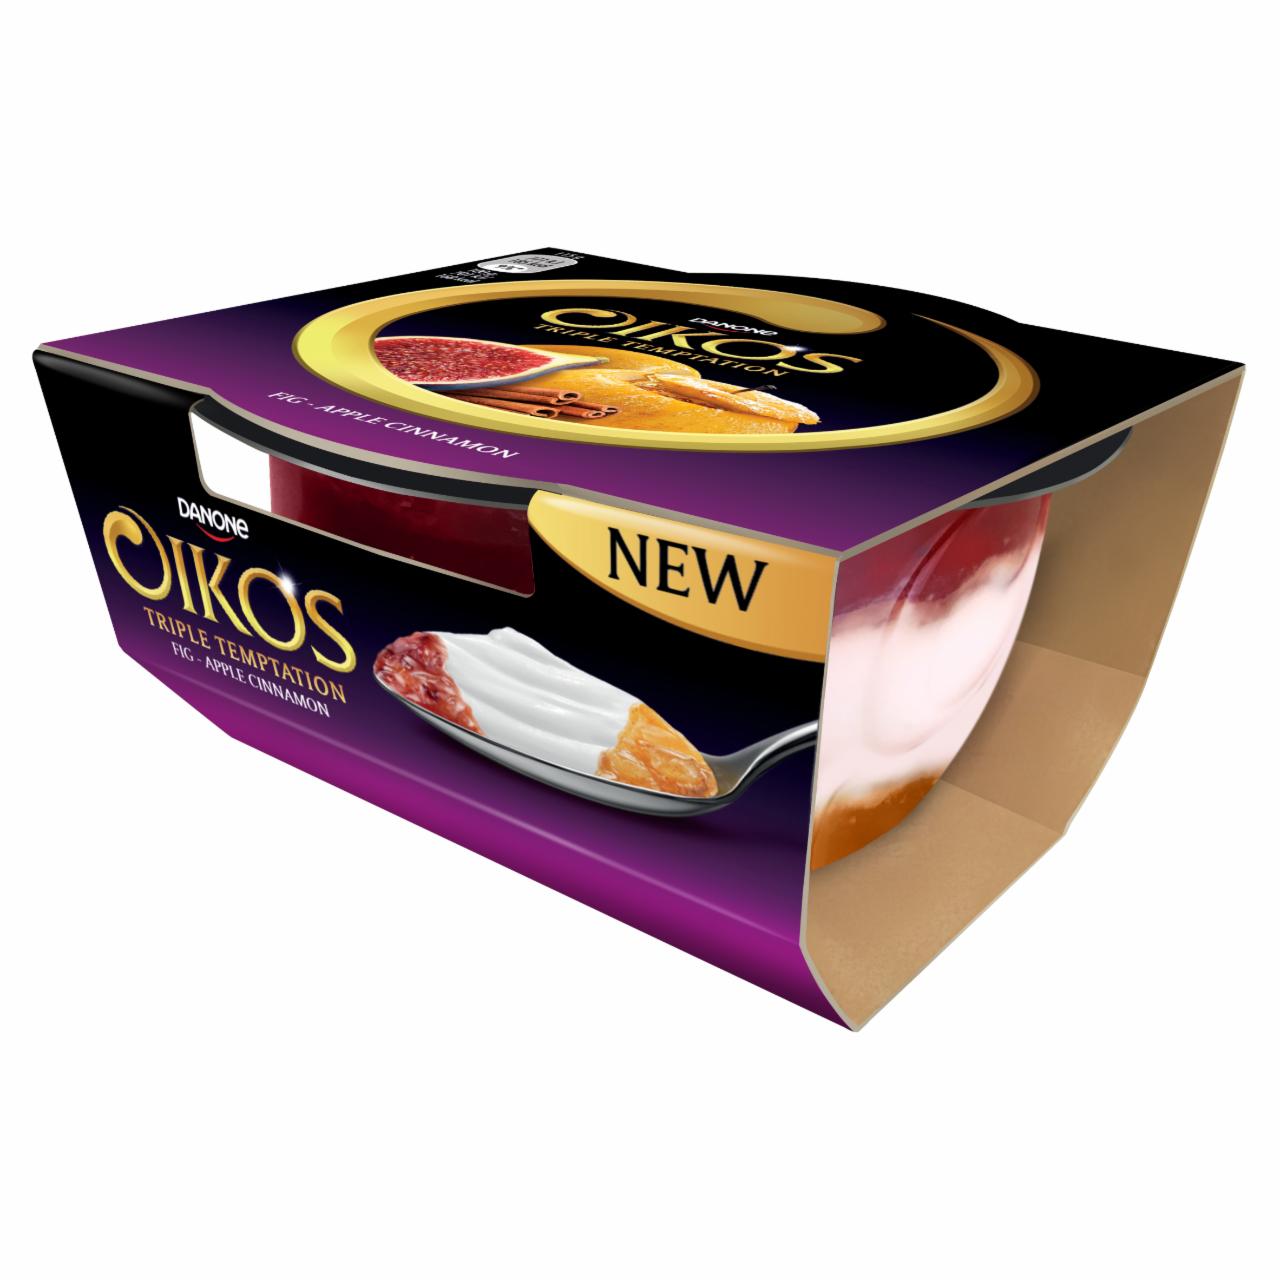 Képek - Danone Oikos Triple Temptation élőflórás görög krémjoghurt alma, füge- és fahéjízű öntettel 115 g